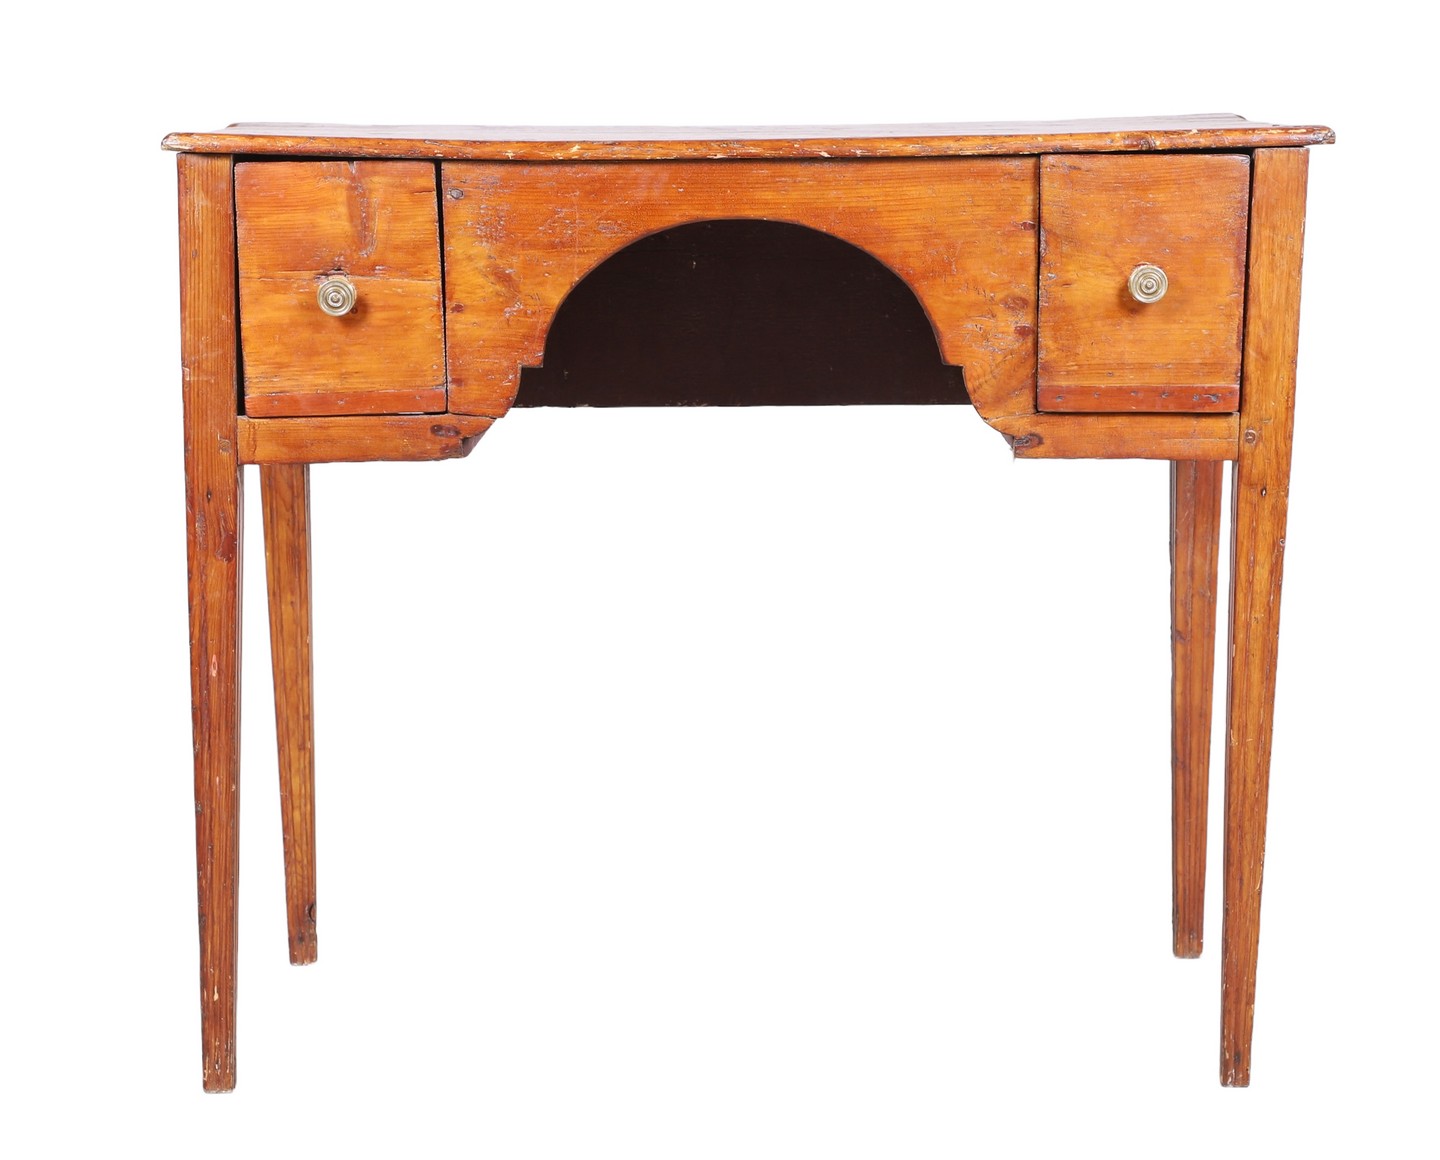 Pine kneehole desk, shaped kneehole